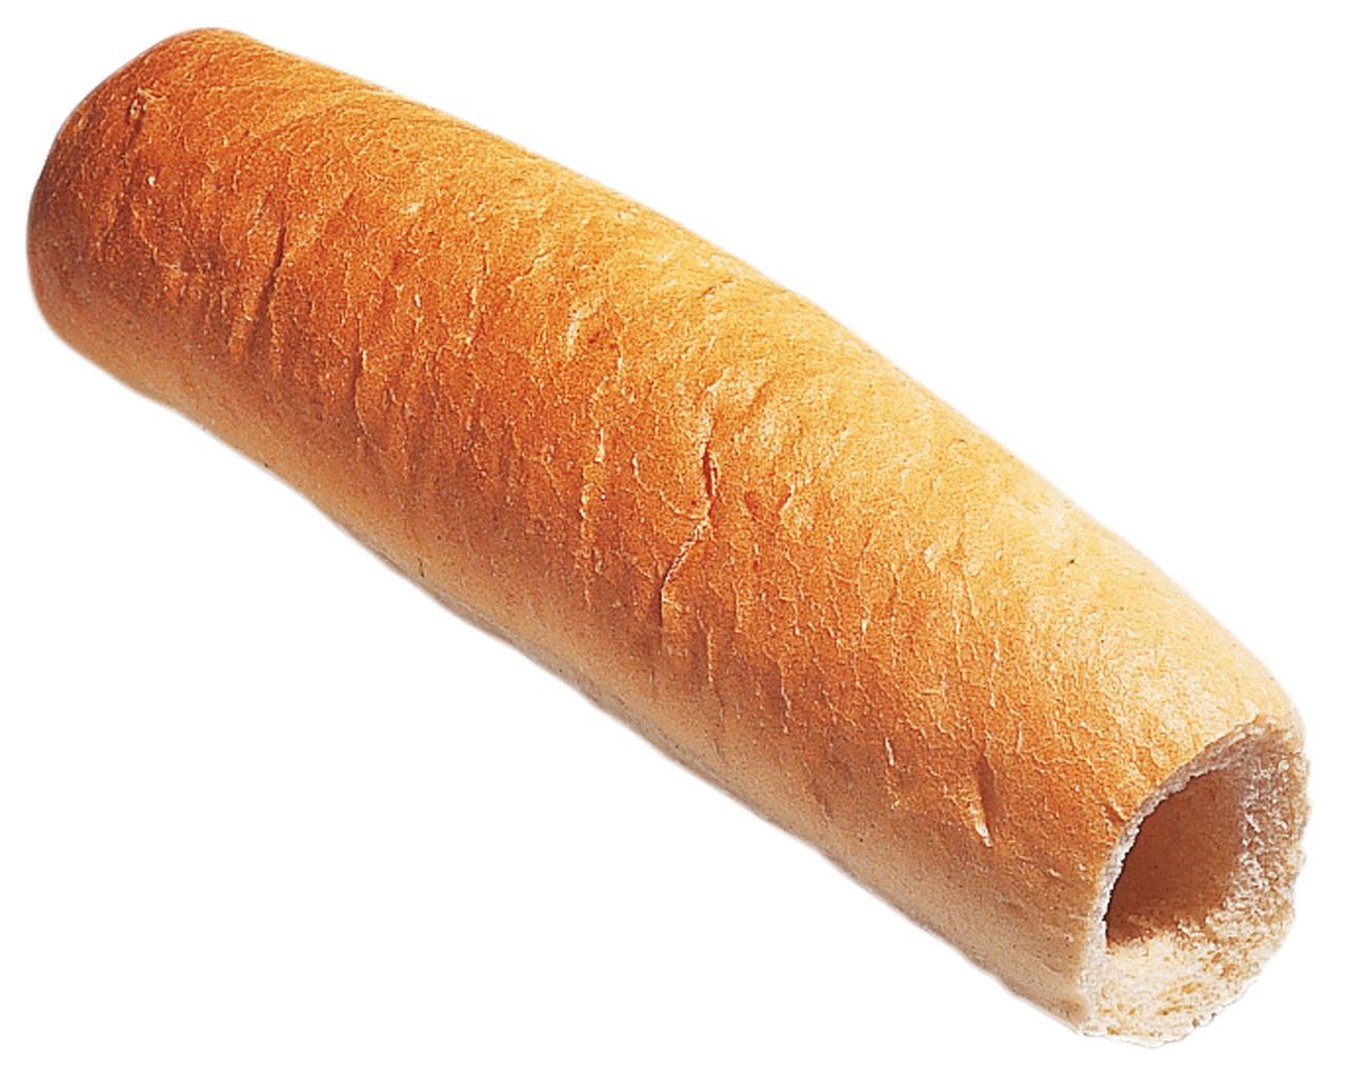 Edna - Hot Dog-Brötchen mit Loch fertig gebacken, tiefgefroren 40 Stück à ca. 60 g - 2 kg Karton